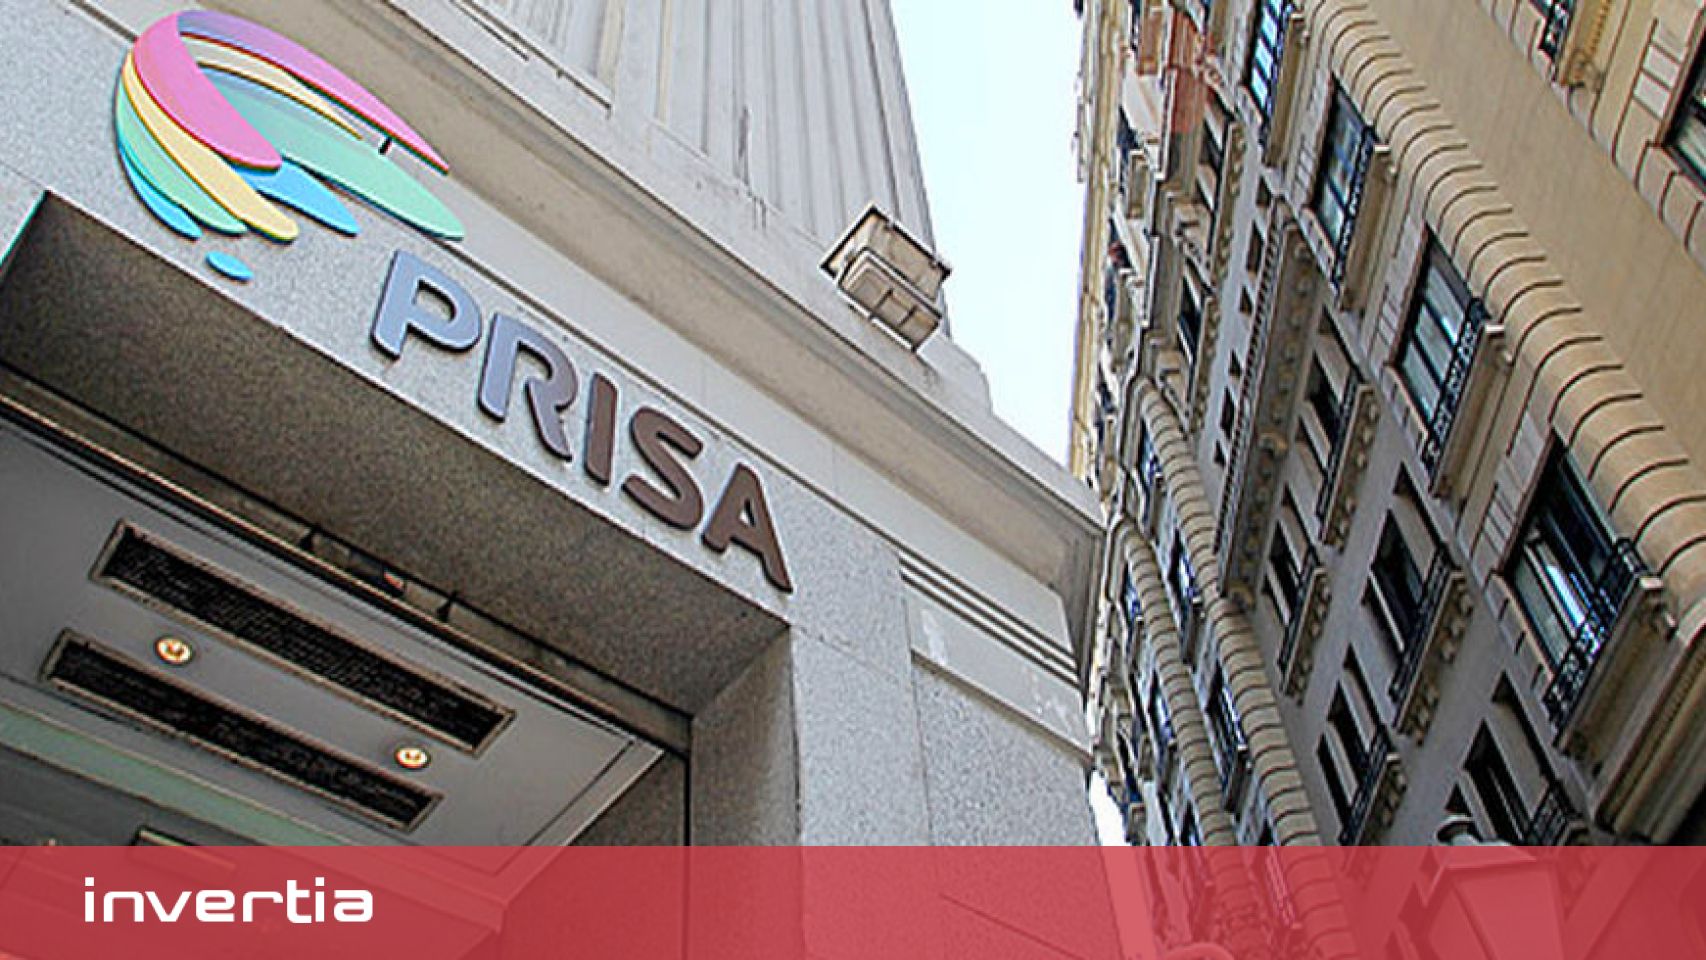 Sede del grupo Prisa, editor de 'El País', en el centro de Madrid.